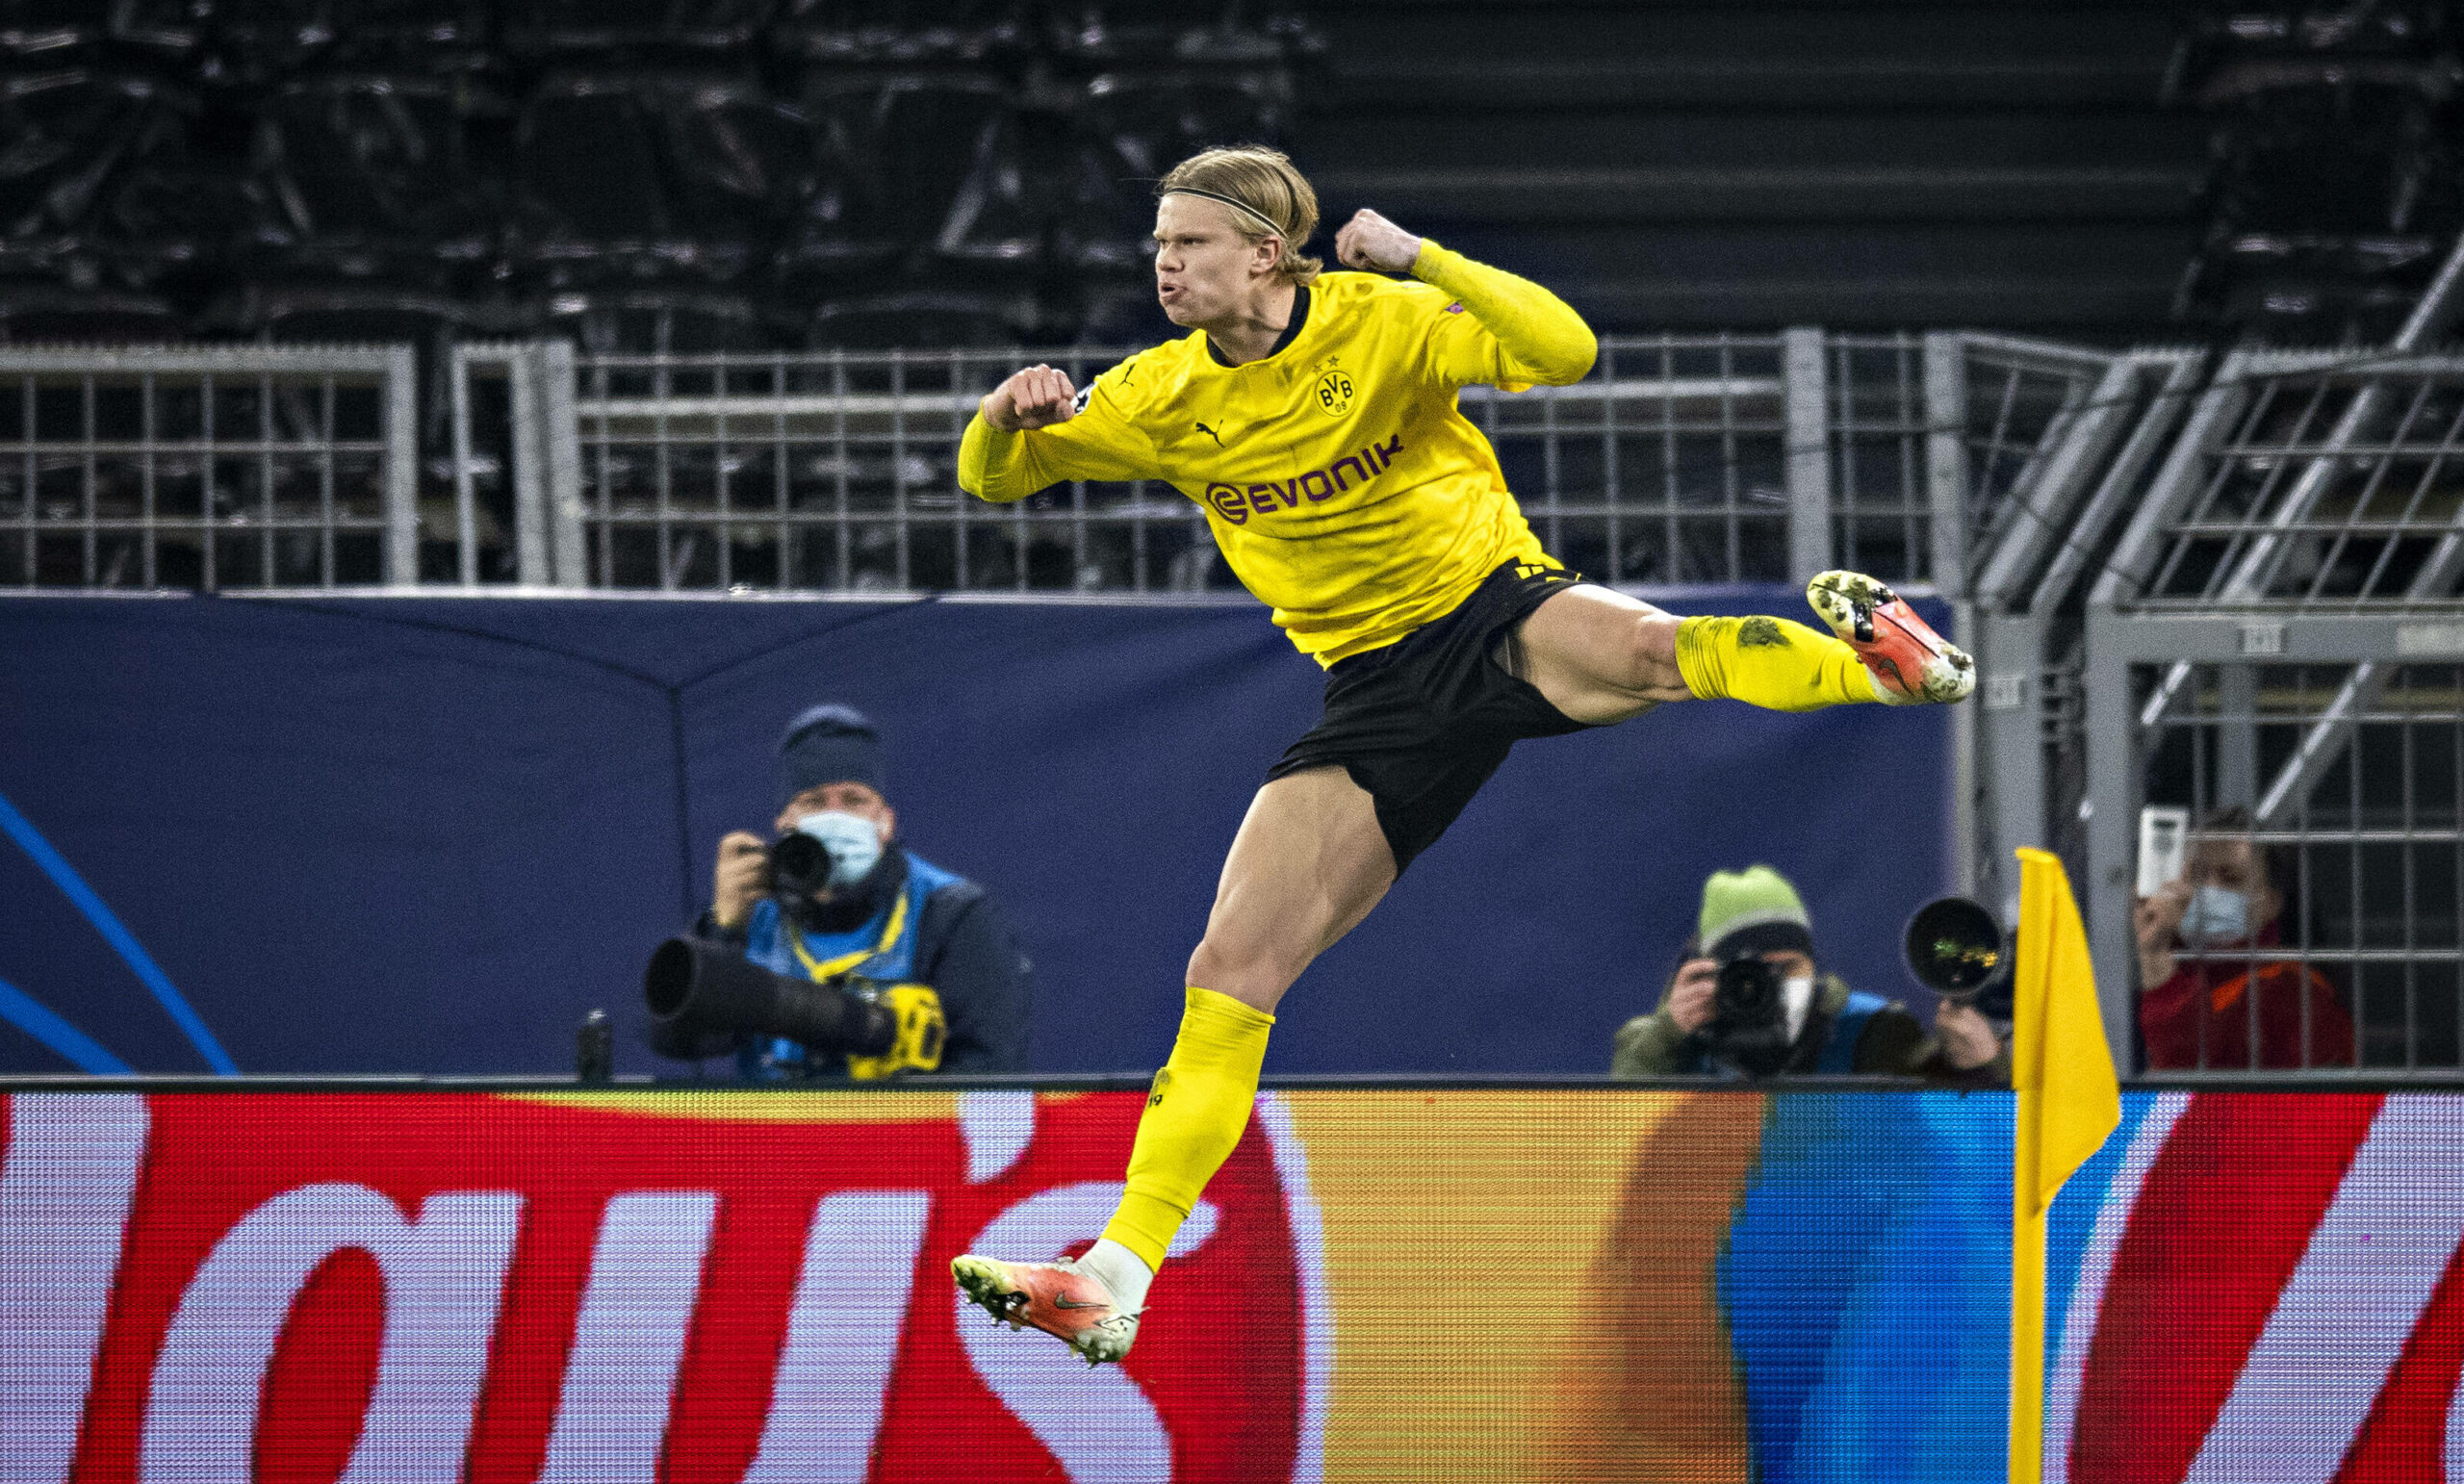 Viertelfinale! Borussia Dortmund reicht Remis in hektischem Spiel gegen Sevilla